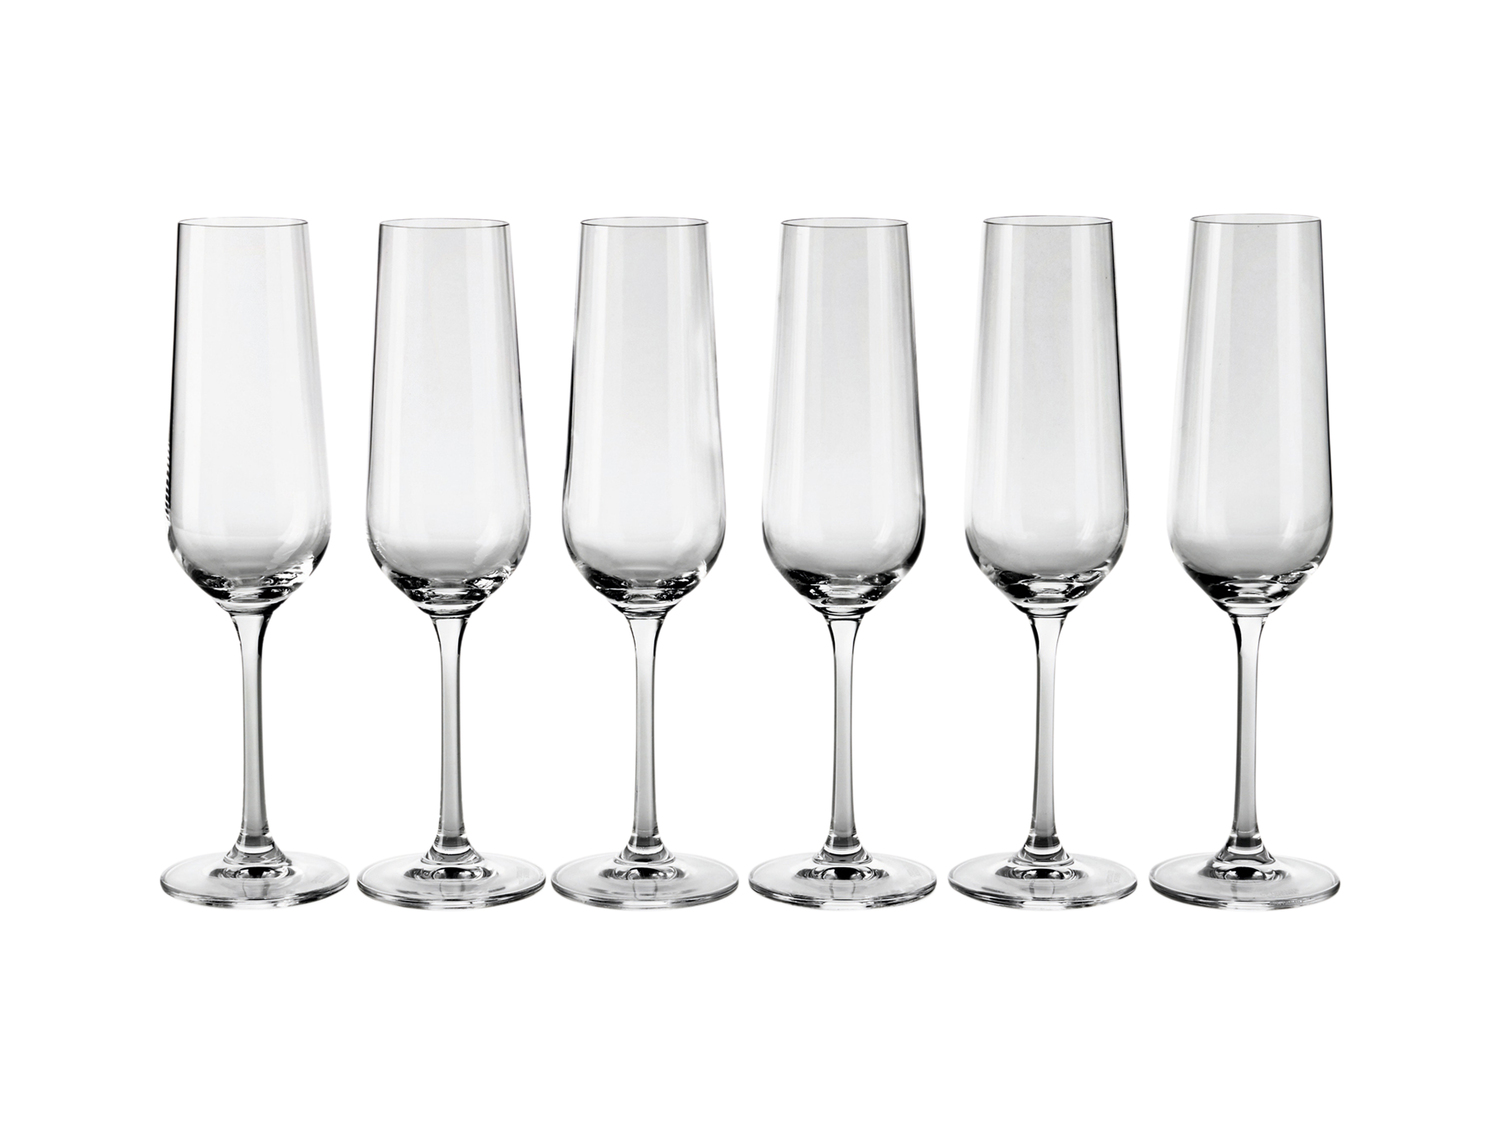 Bicchieri Ernesto, le prix 9.99 &#8364; 
6 pezzi 
- Per spumante: 215 ml
- ...